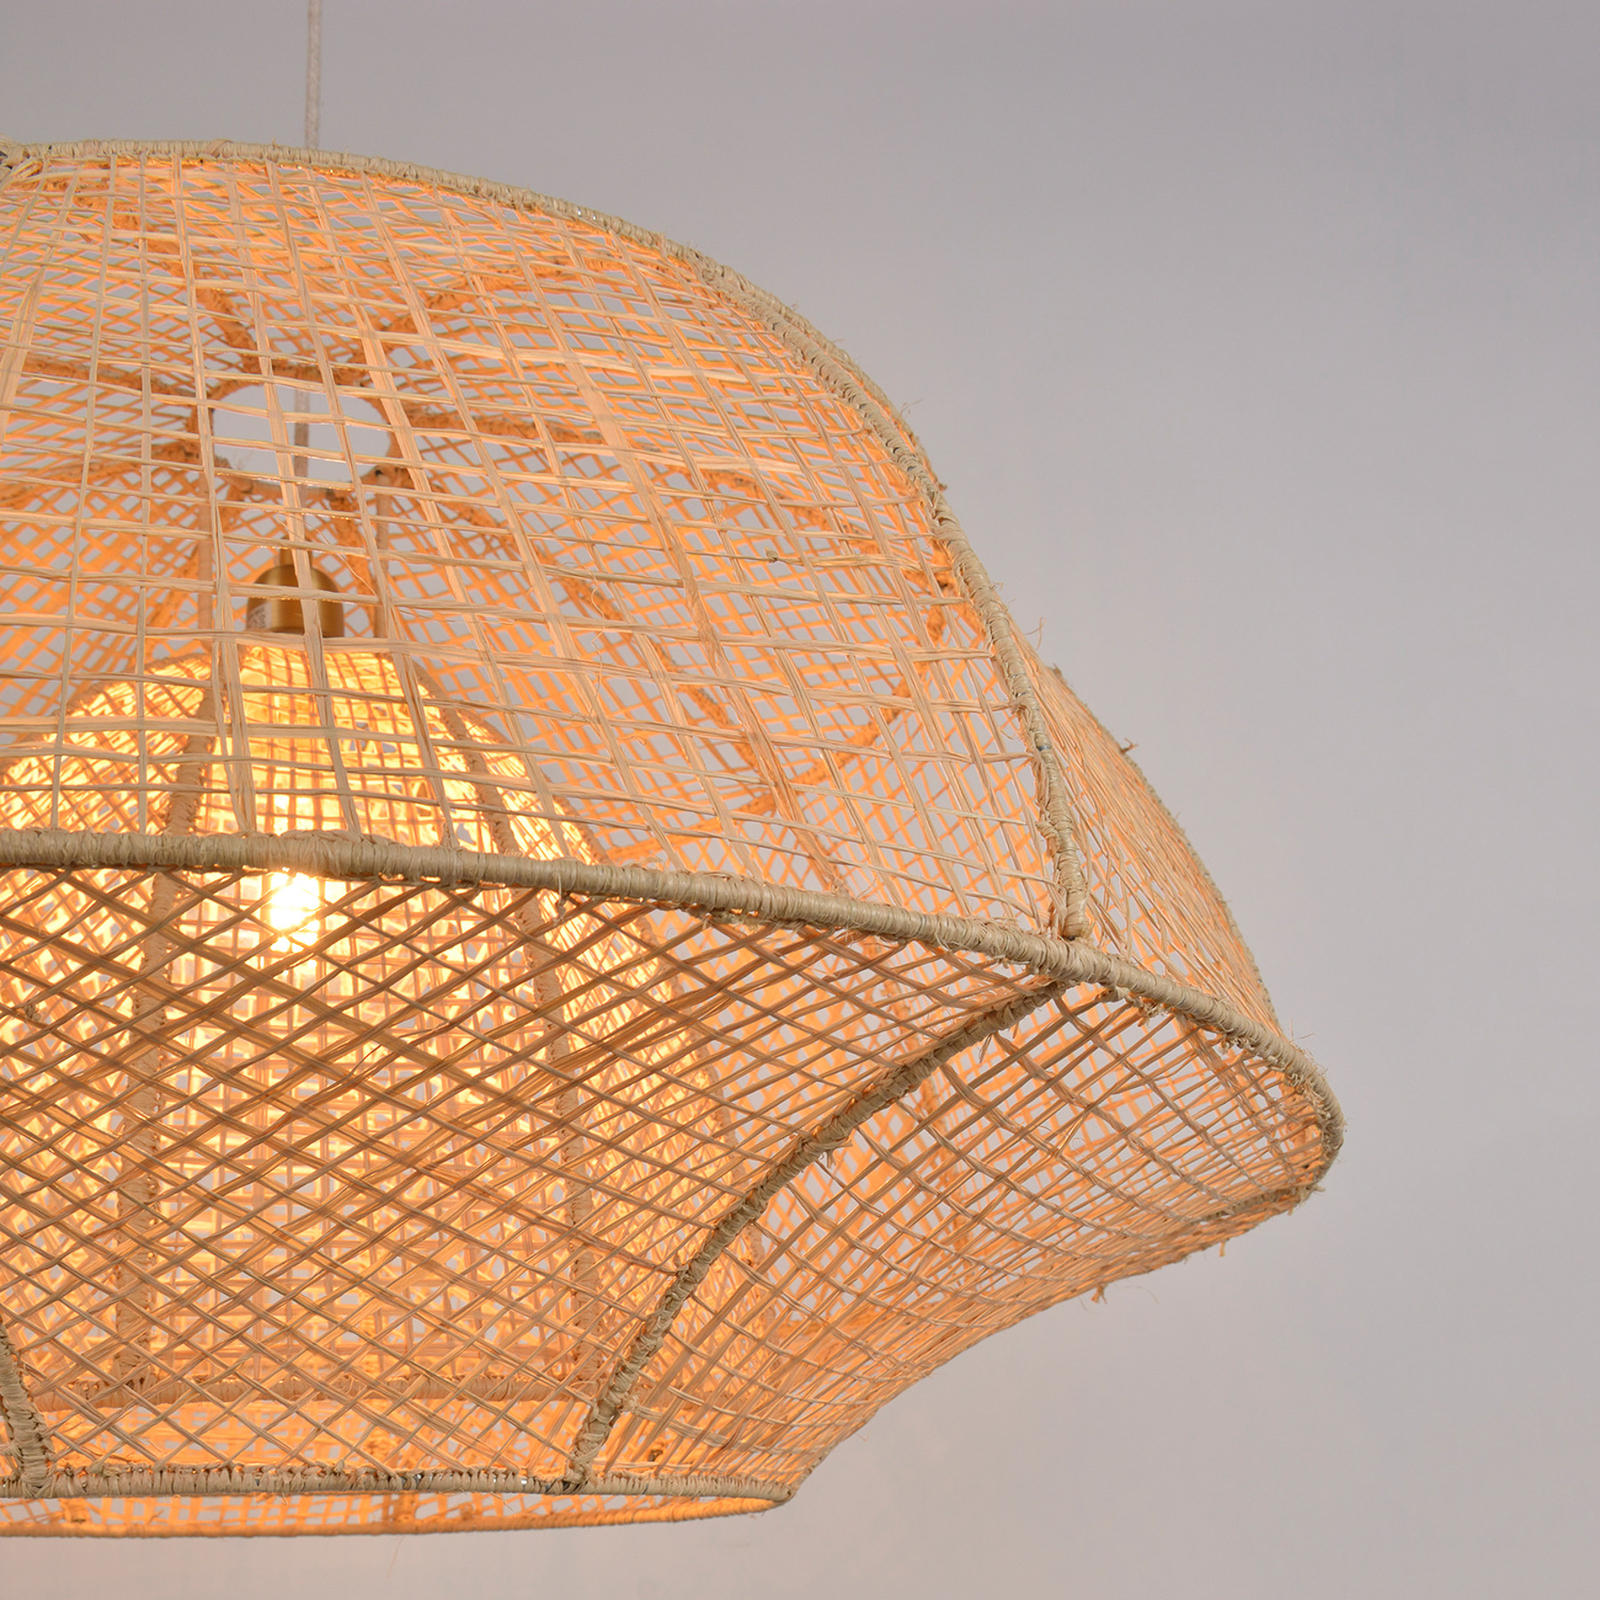 MARKET SET Závěsná lampa Odyssée, palmové vlákno, Ø 78 cm